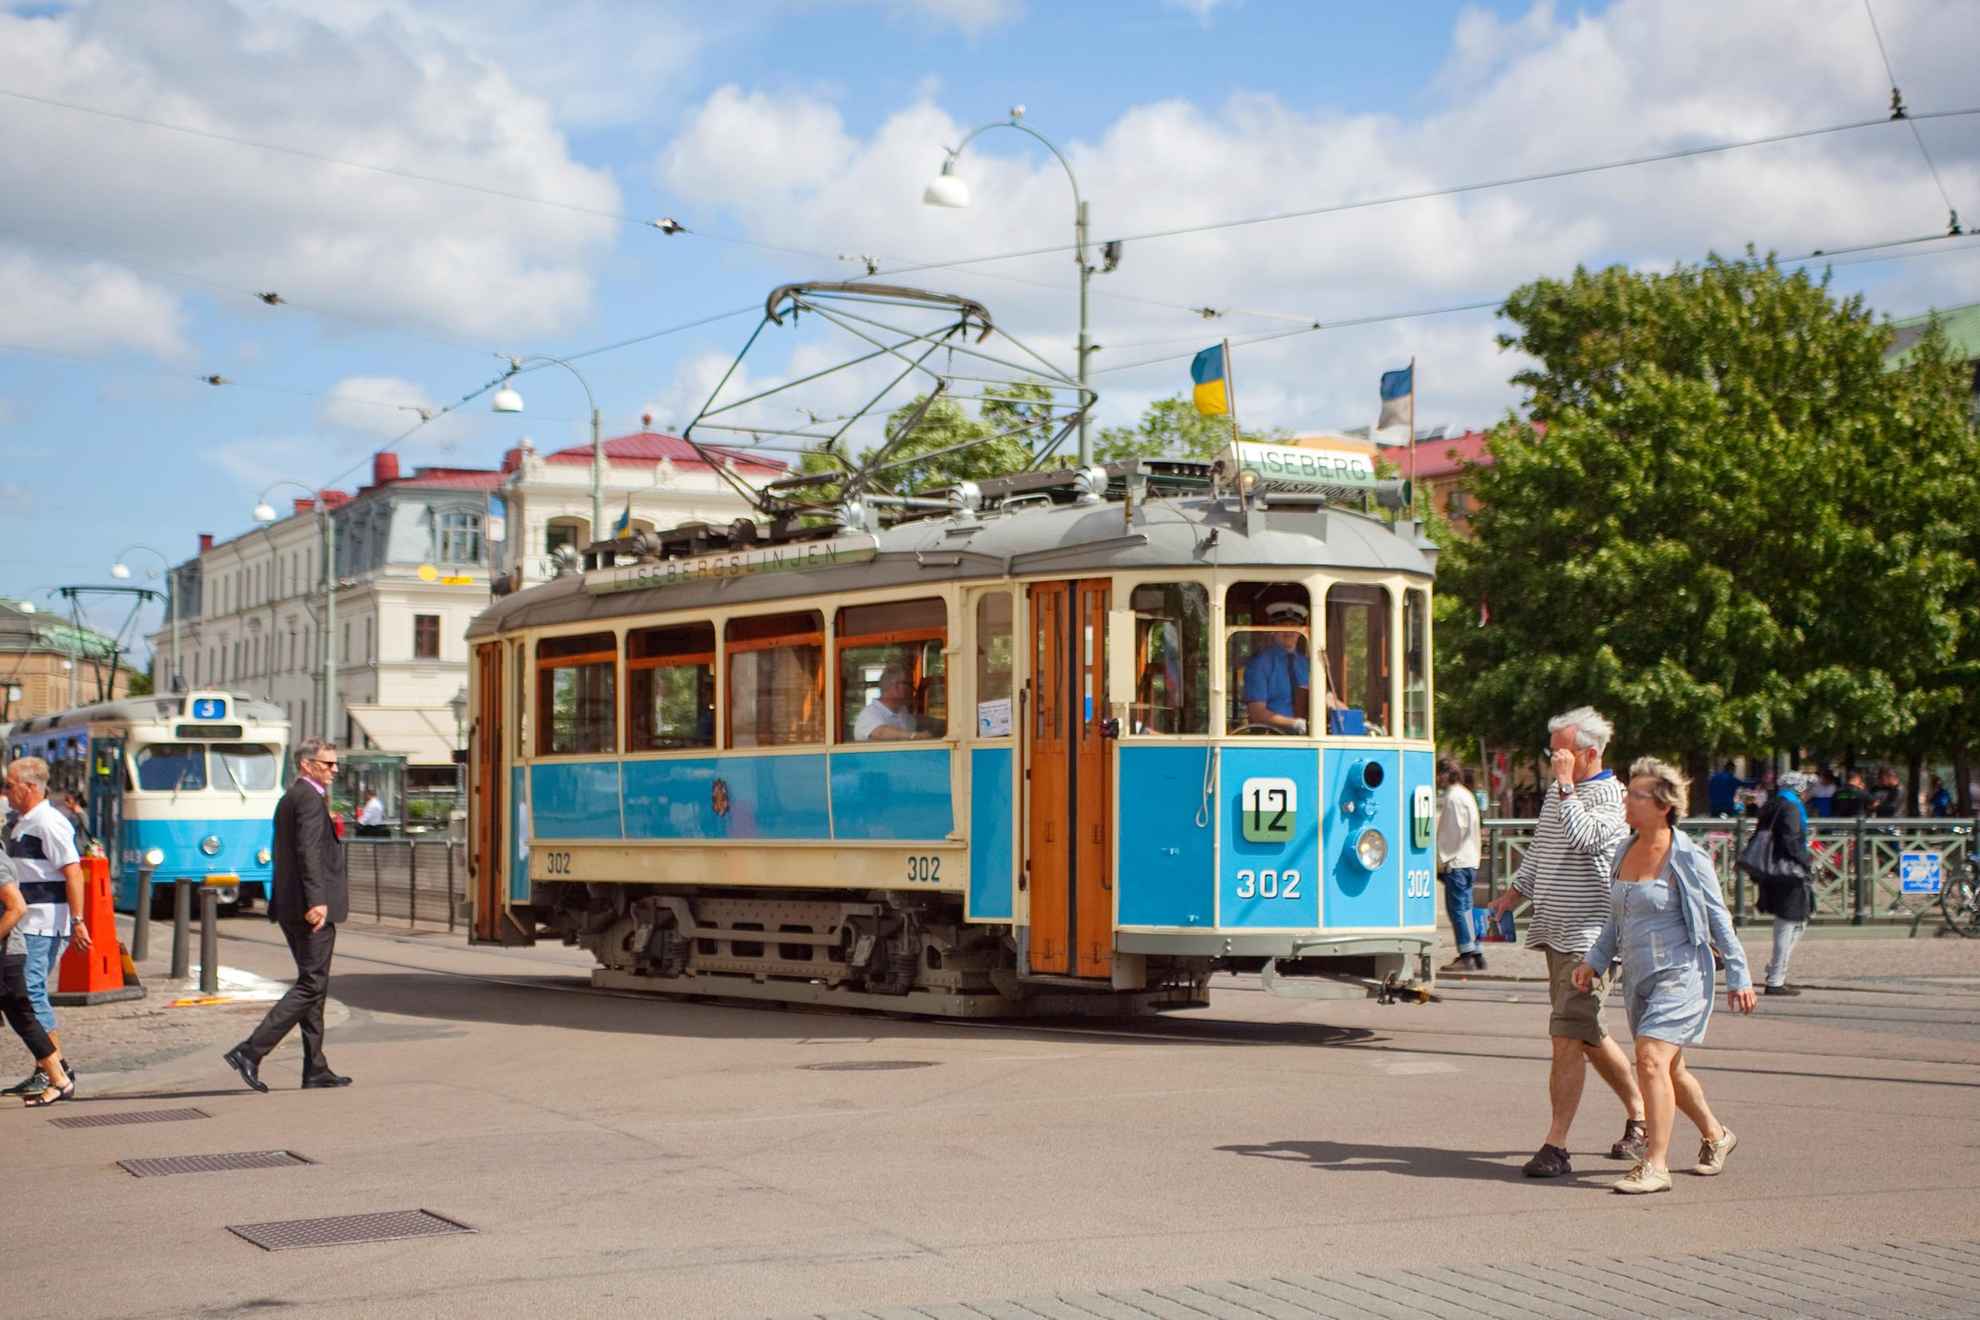 Op straat in het centrum van Göteborg rijdt een ouderwetse tram. Het is zomer en daglicht.